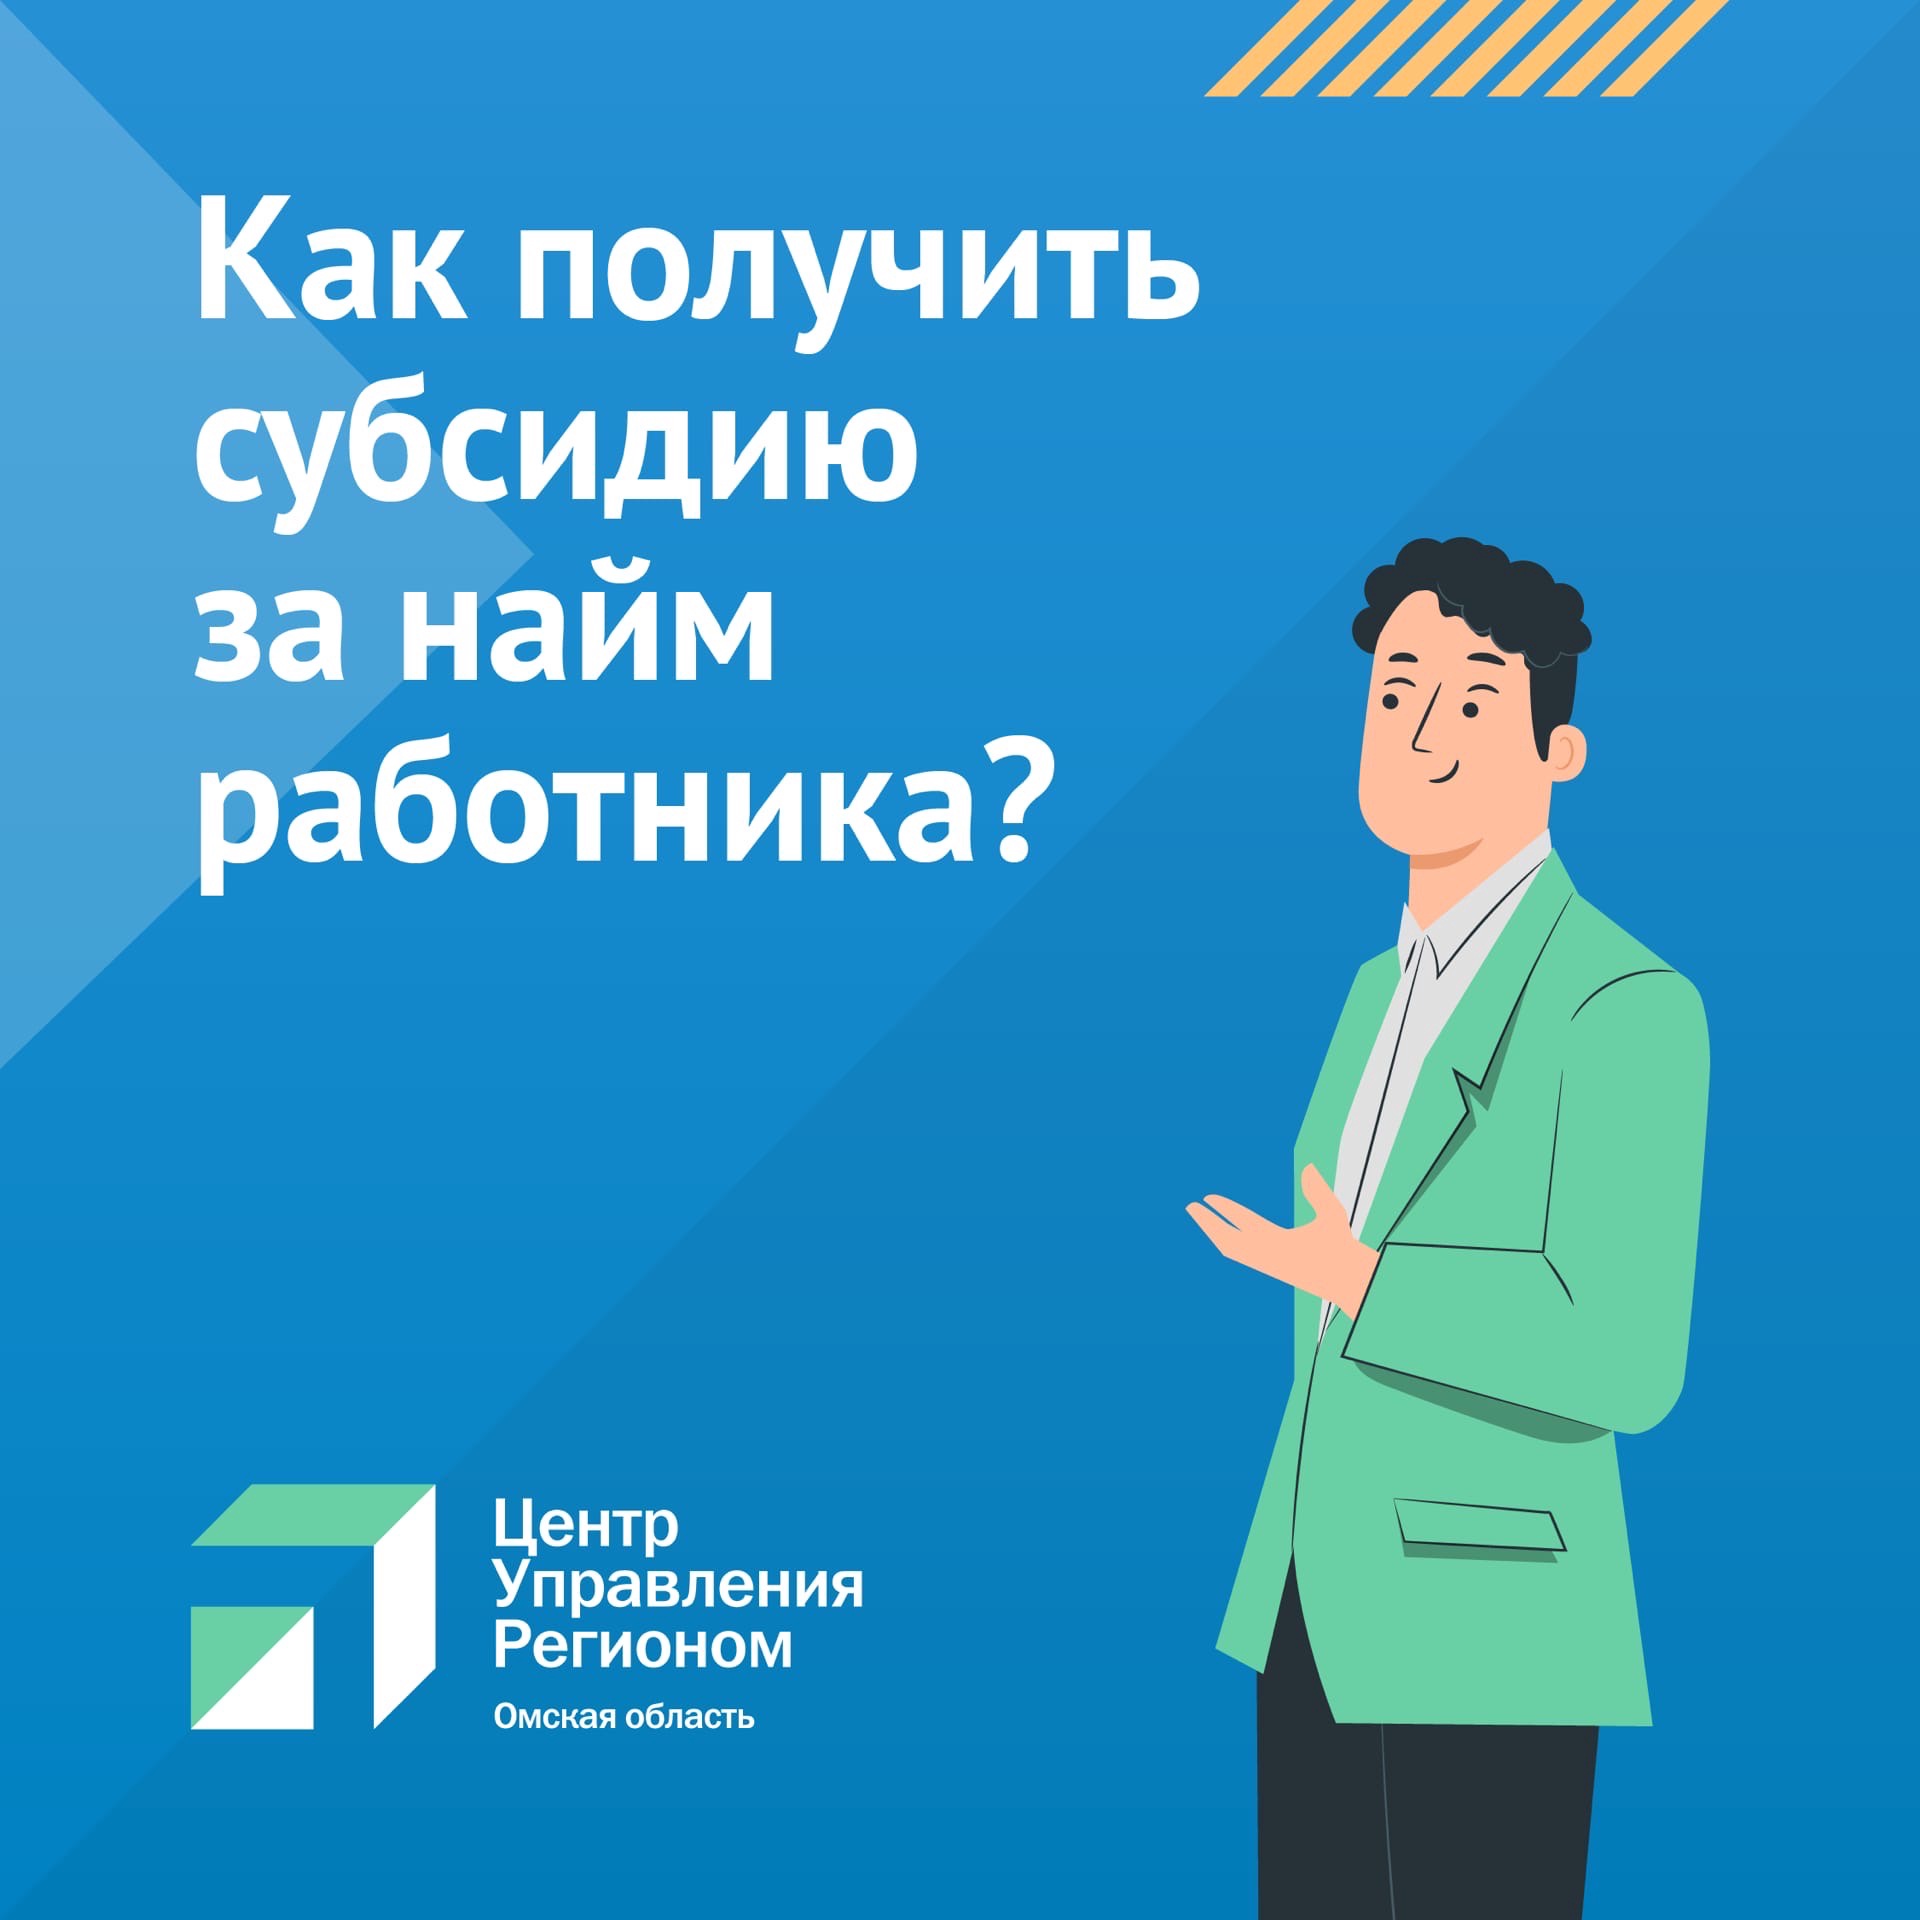 Министерство труда и социального развития Омской области информирует